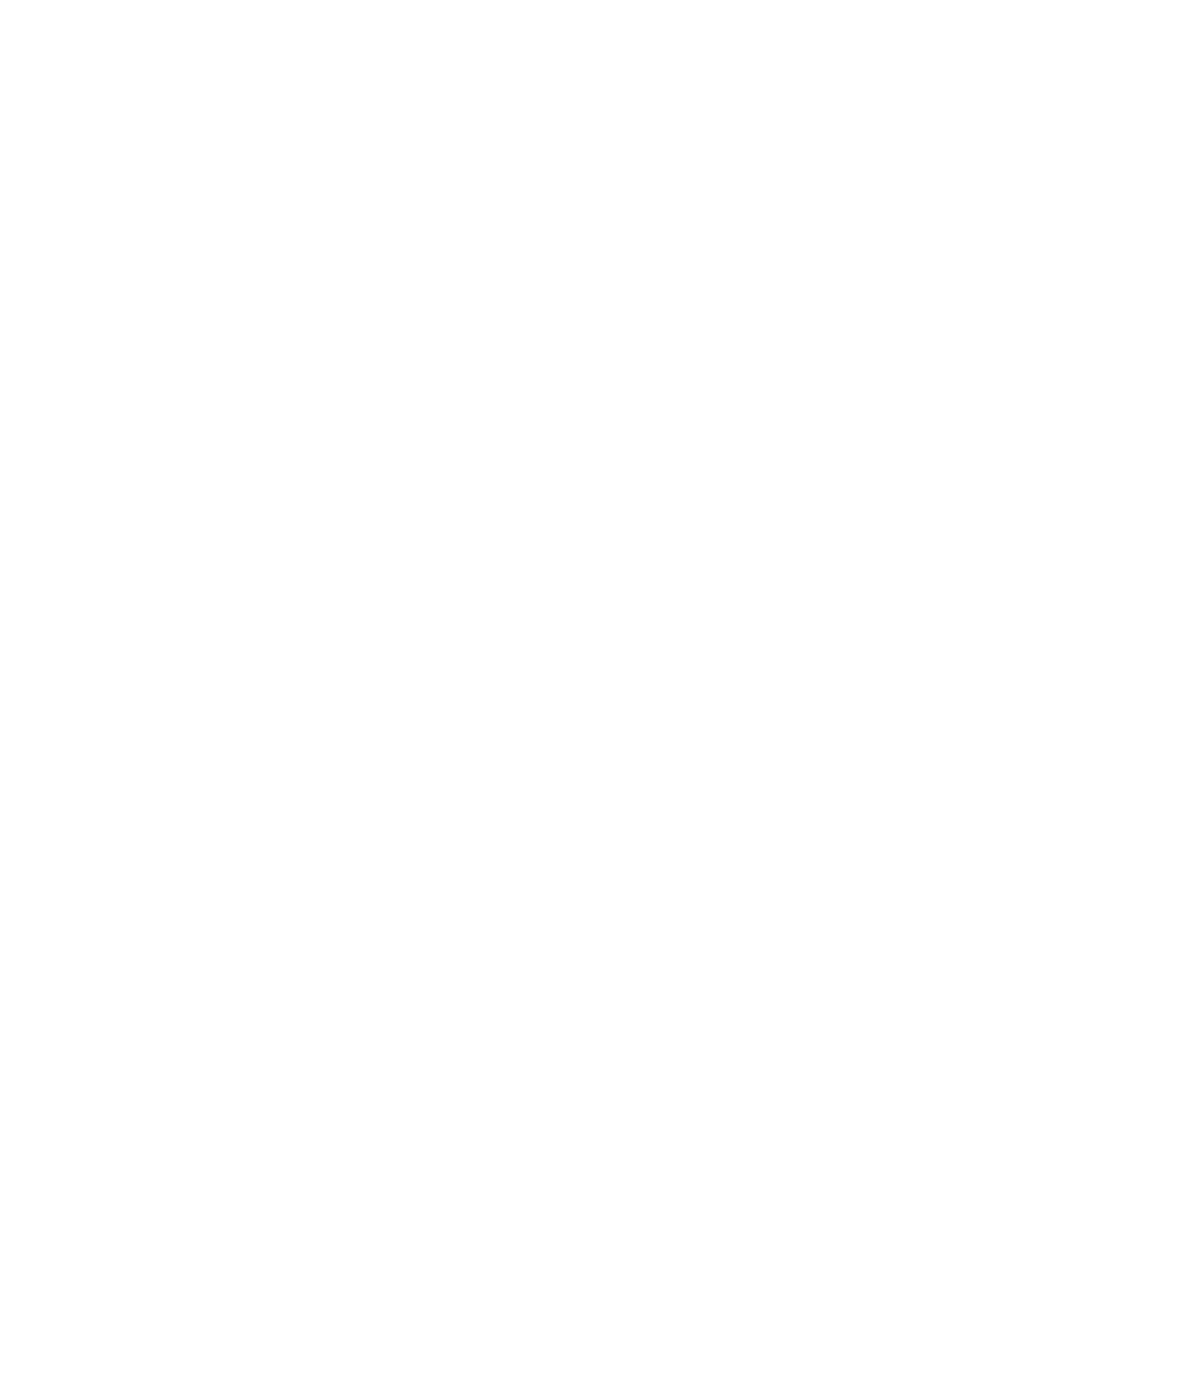 korn tour dates 2000